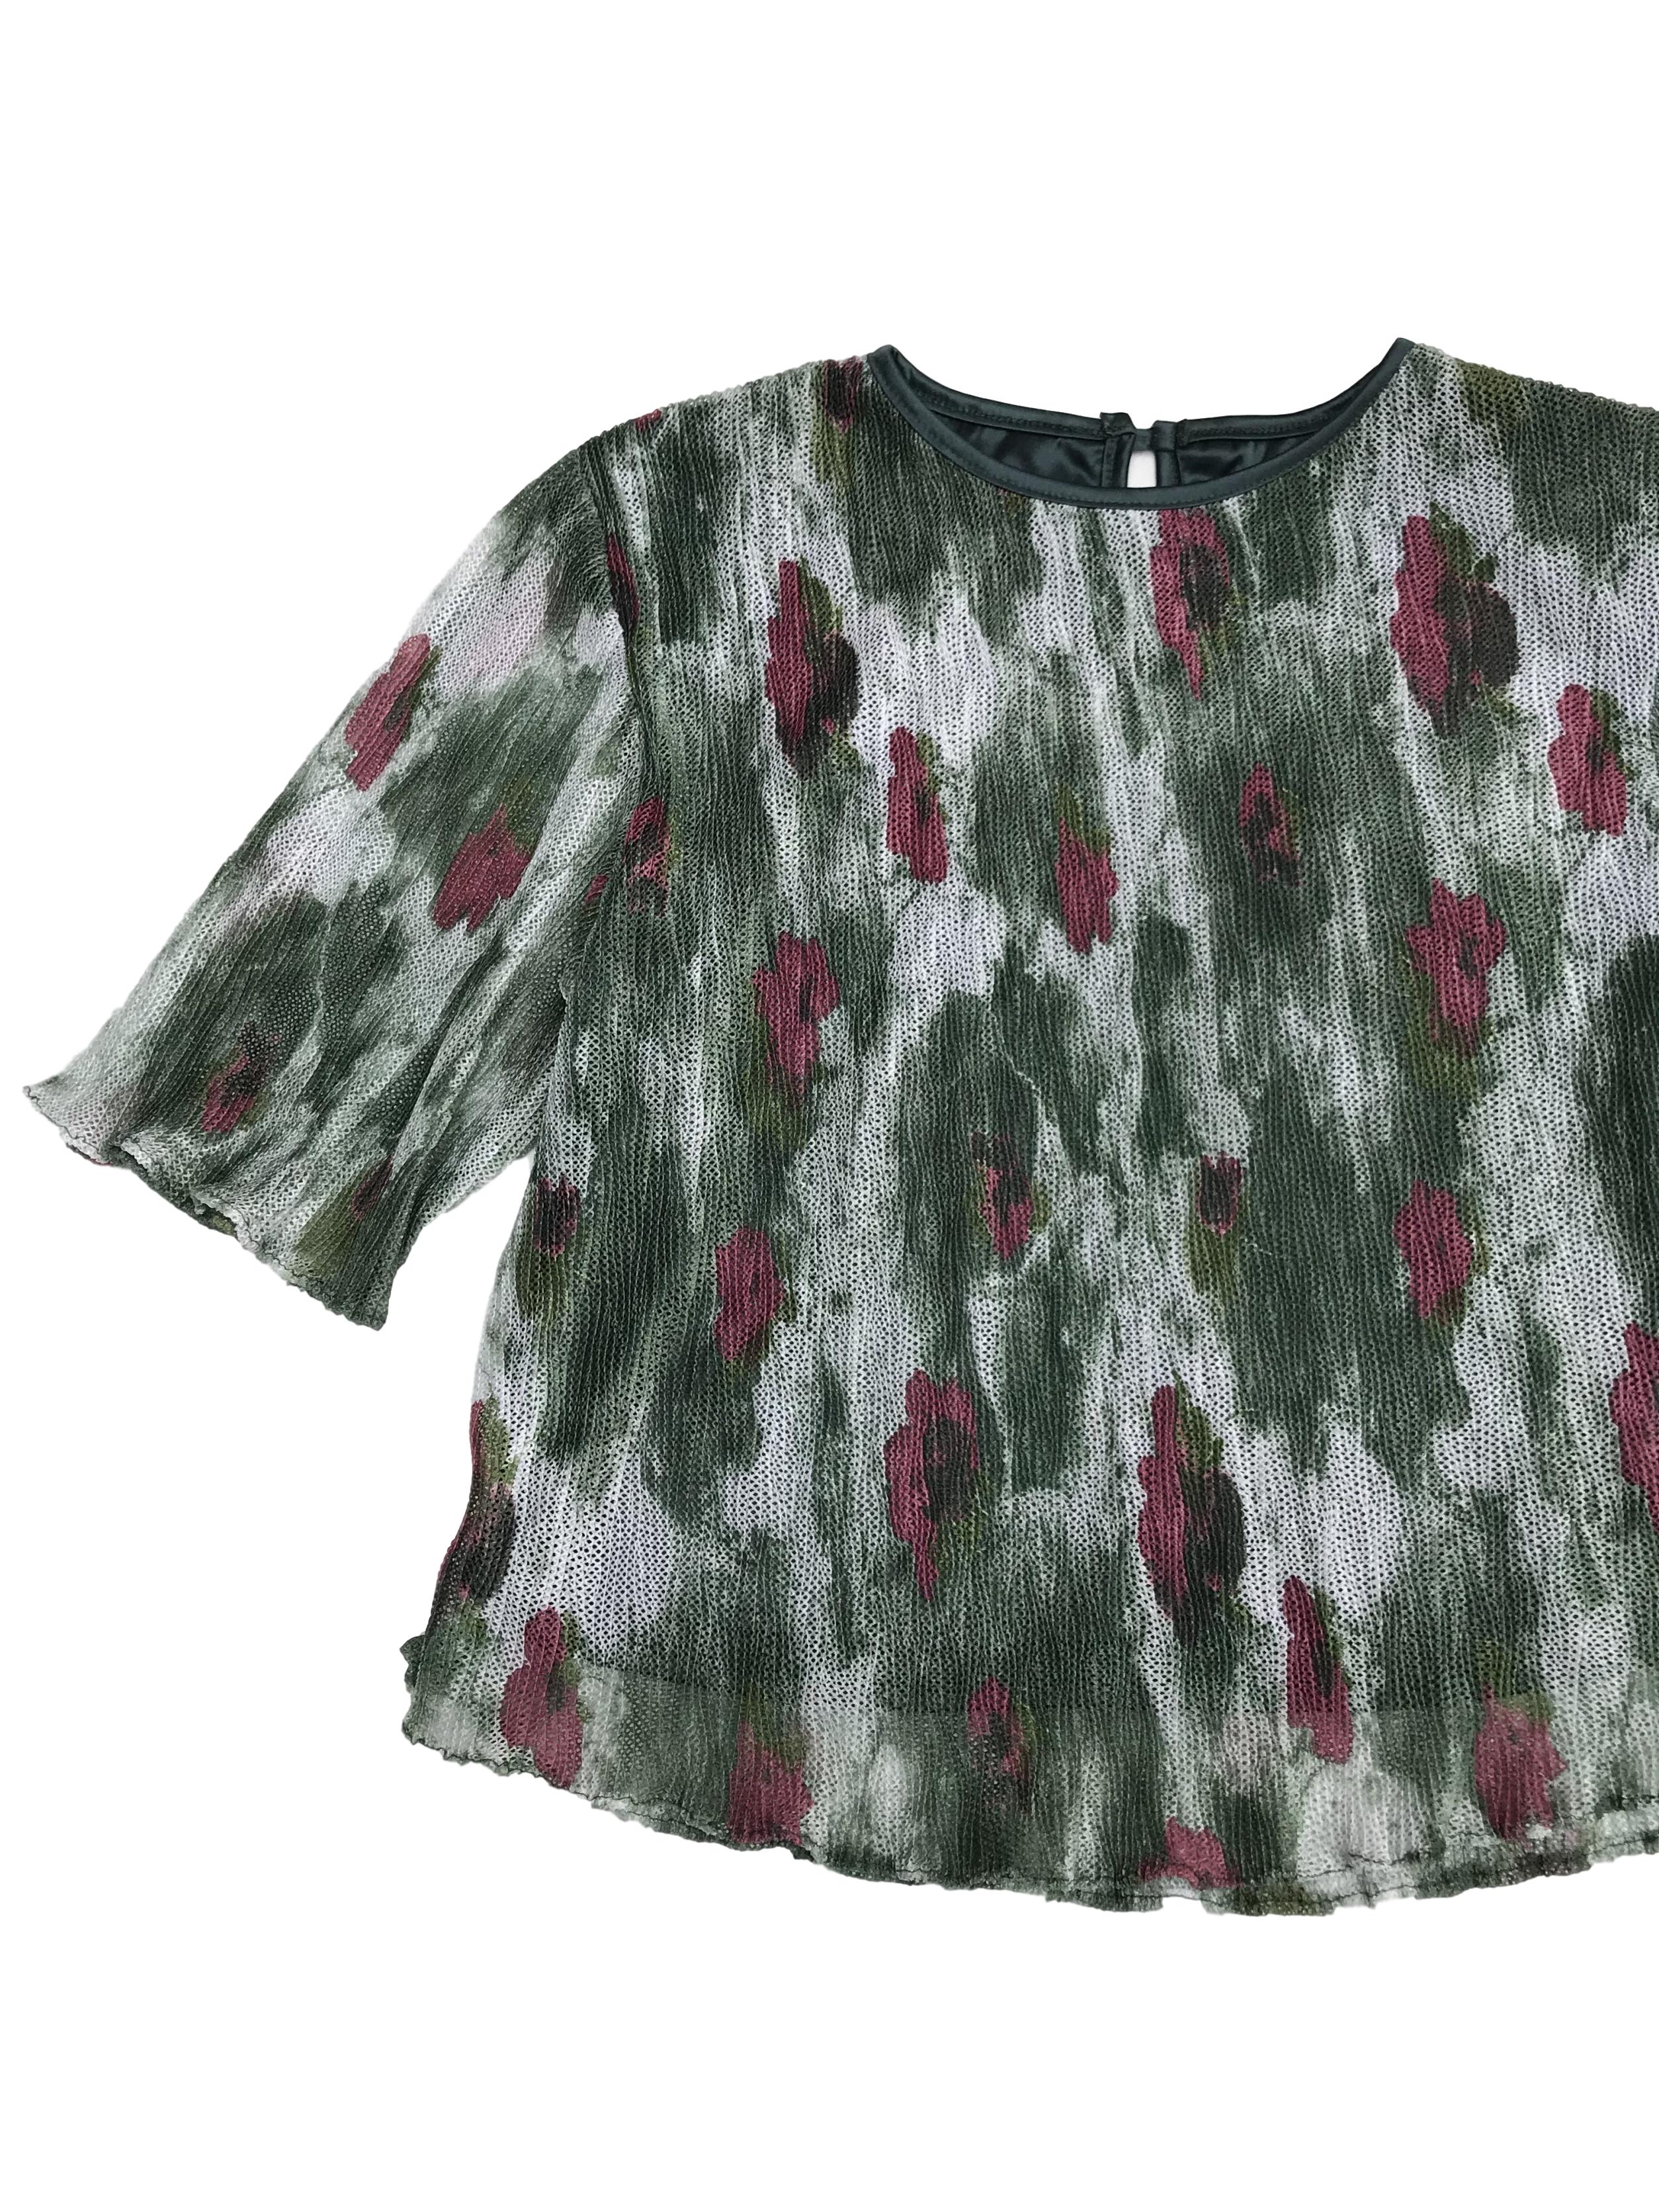 Blusa vintage, corta, tela tipo malla en tonos verdes, blancos y flores rojas, forrada. Busto 100cm Largo 50cm